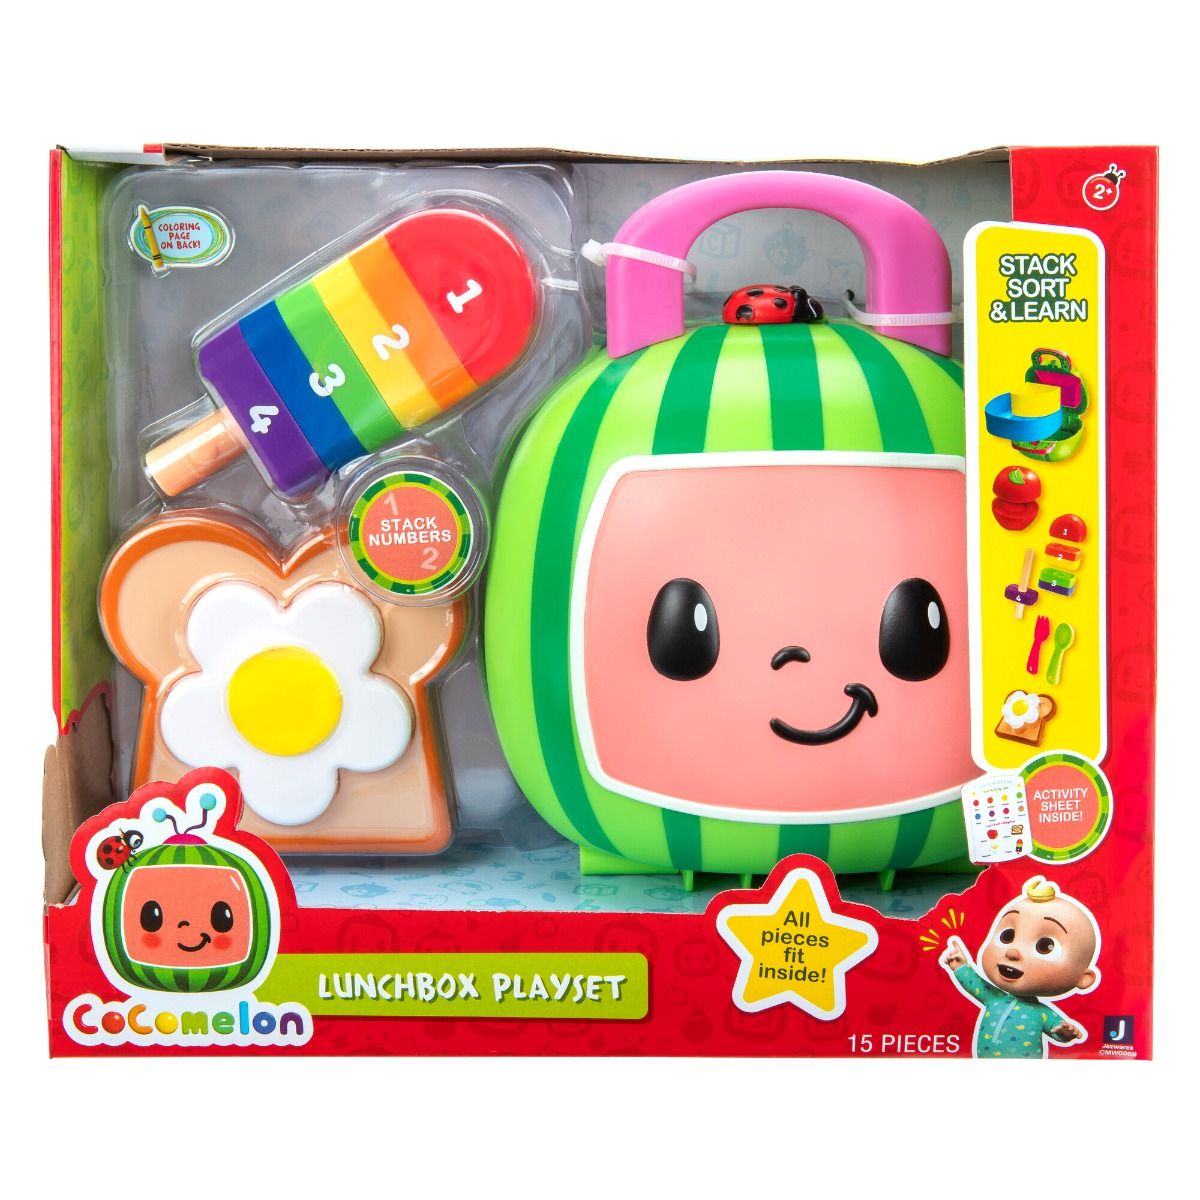 Детская игрушка Cocomelon Roleplay Lunchbox, 1 шт детская игрушка cocomelon jj 1 шт